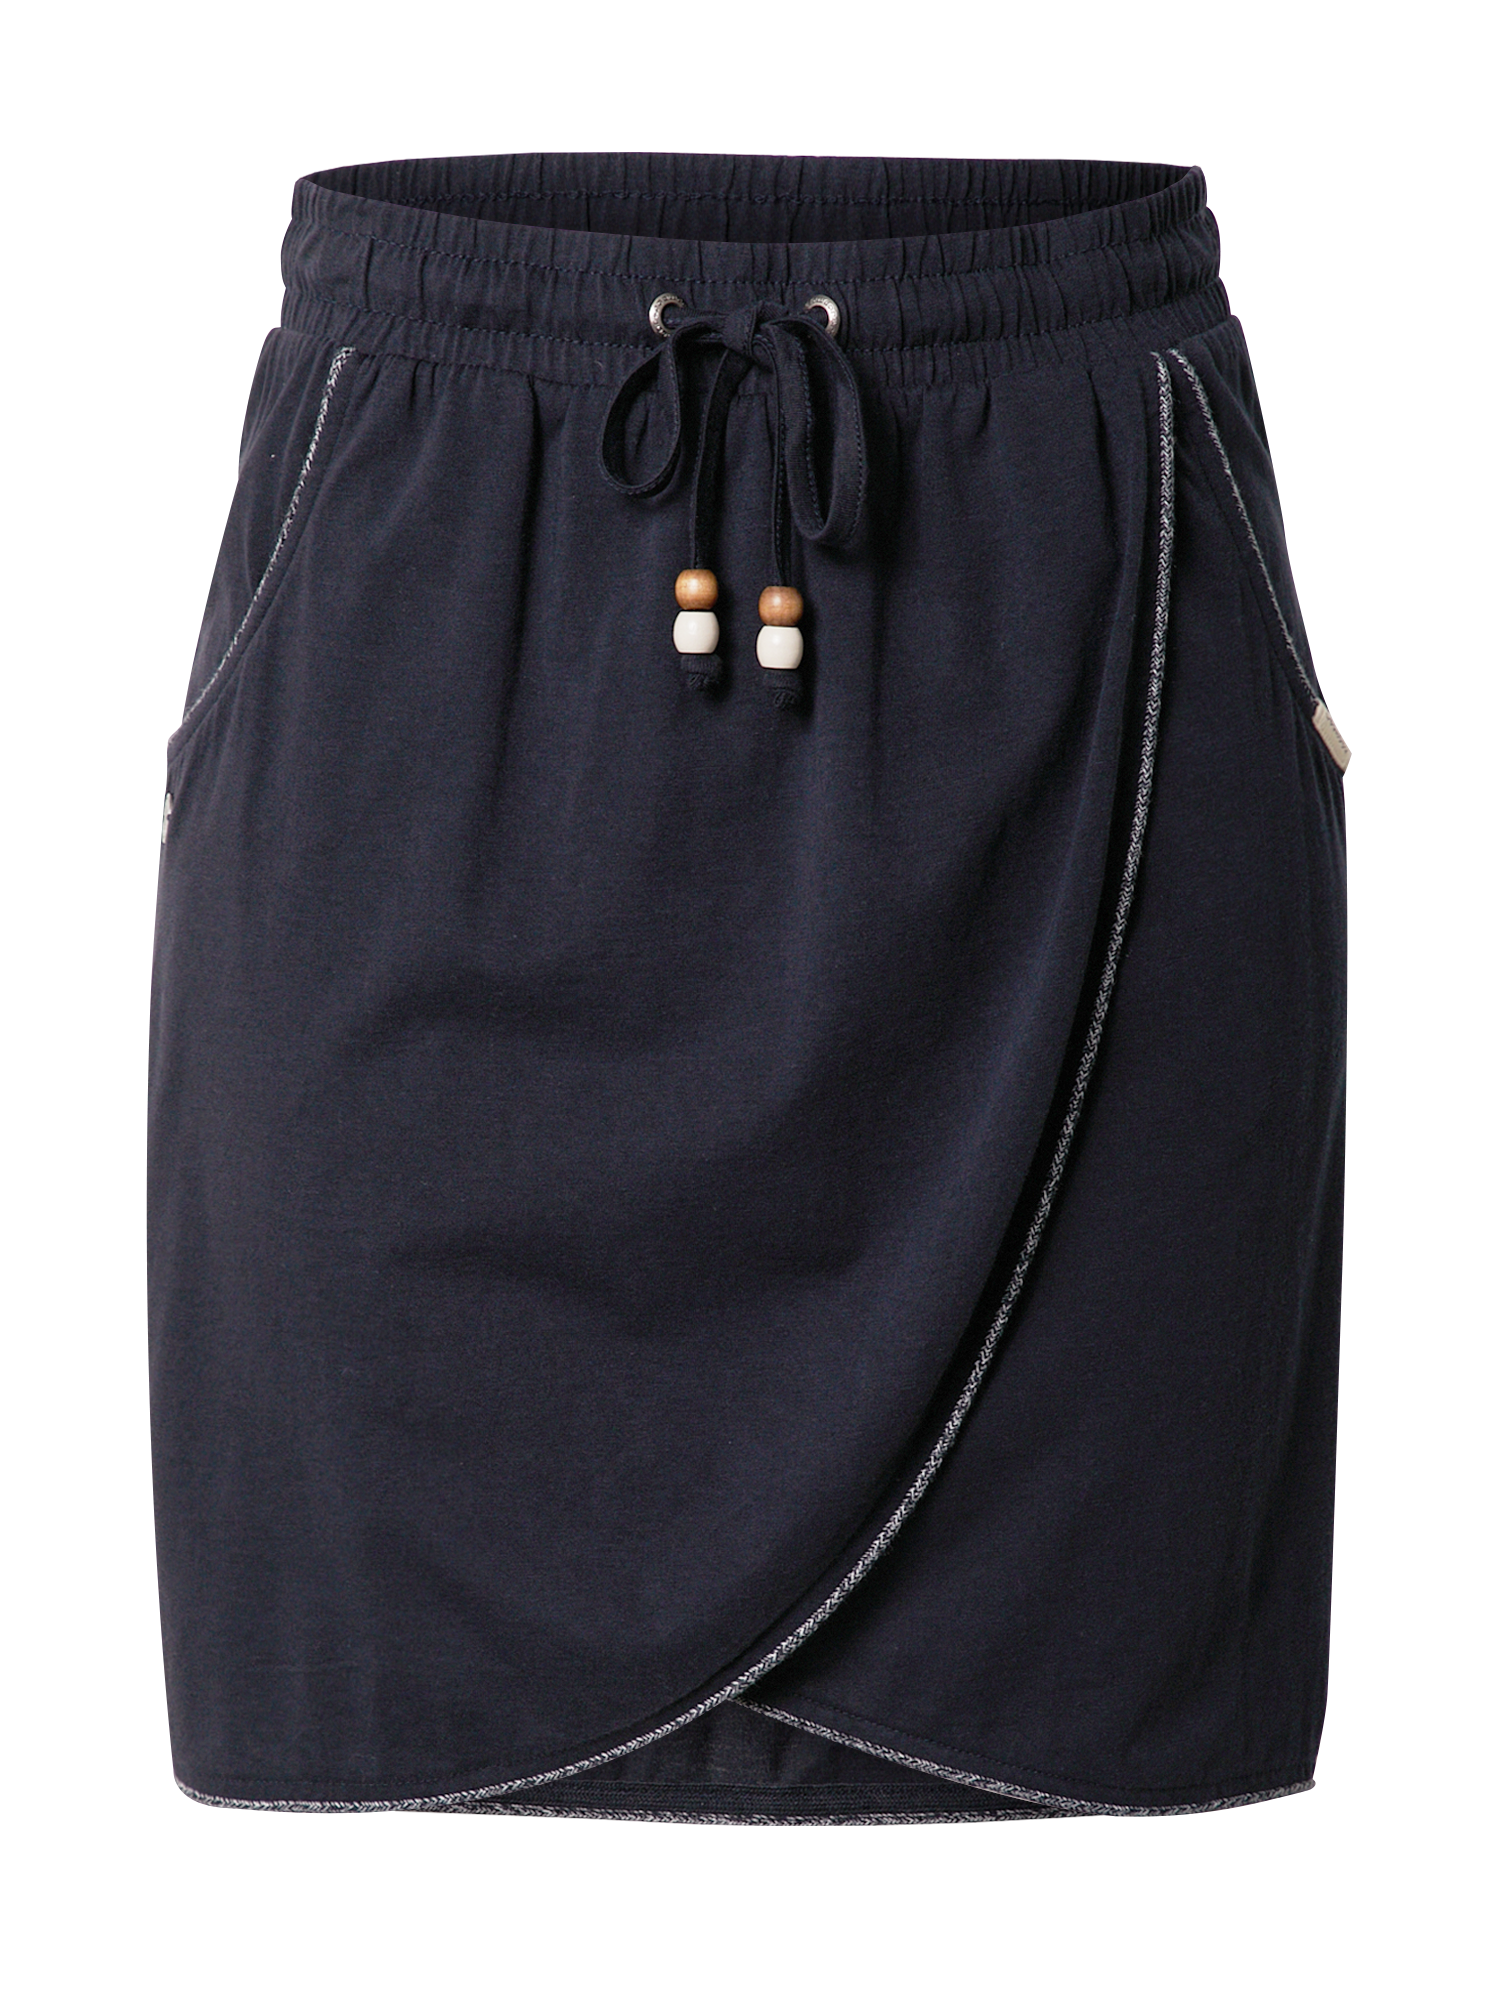 Odzież Spódnice Ragwear Spódnica NAILA w kolorze Granatowym 